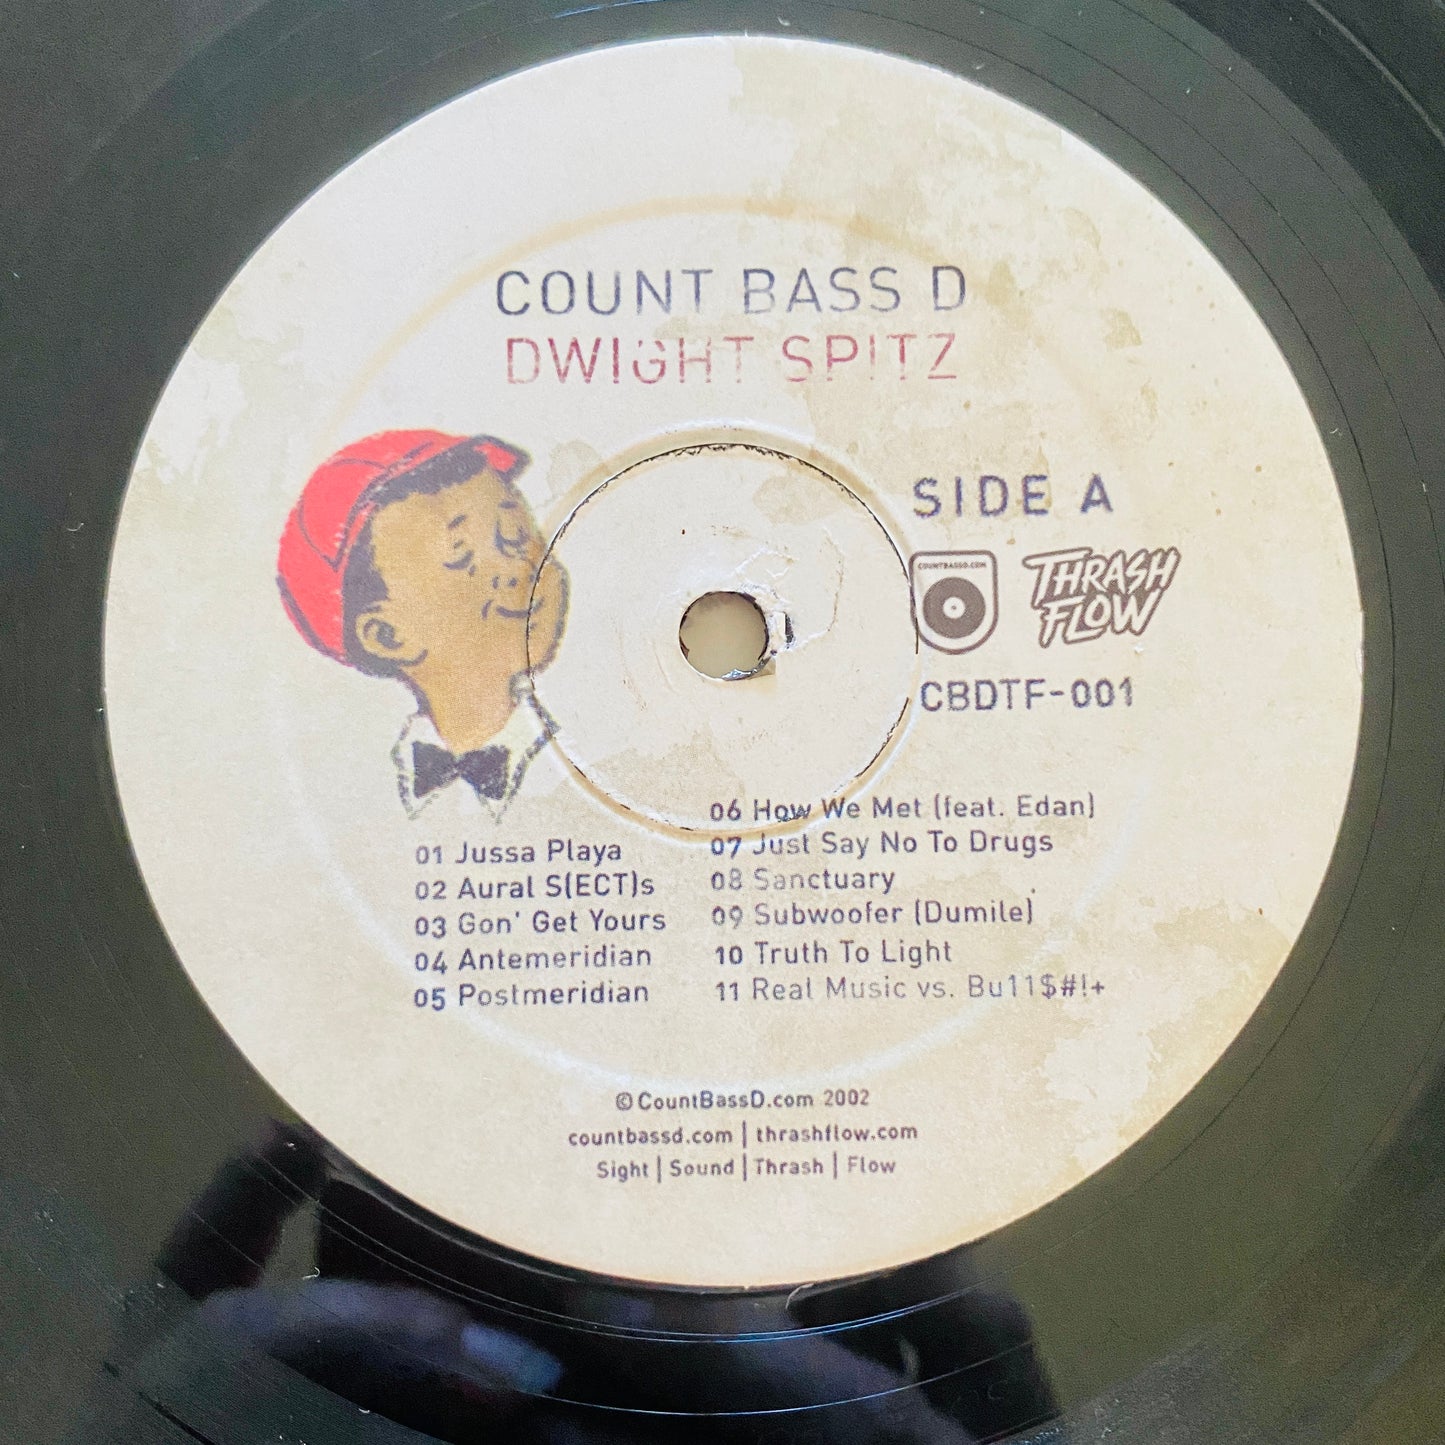 Count Bass D - Dwight Spitz (2xLP, Album, Dlx, RE). HIP-HOP